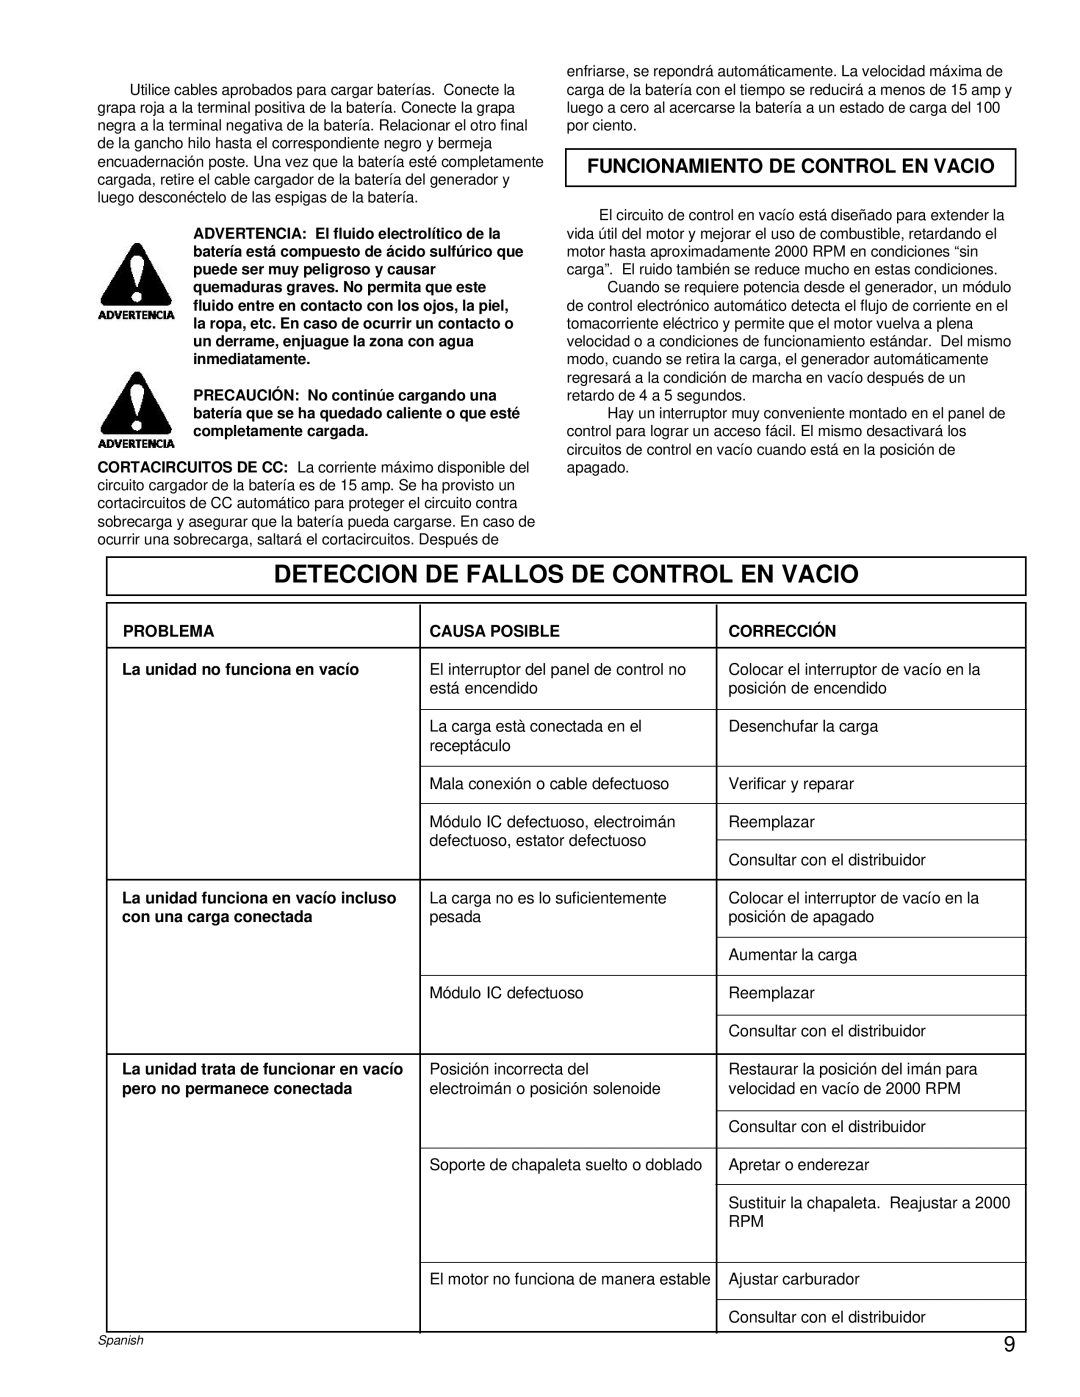 Powermate PC0496504.18 manual Deteccion De Fallos De Control En Vacio, Funcionamiento De Control En Vacio 